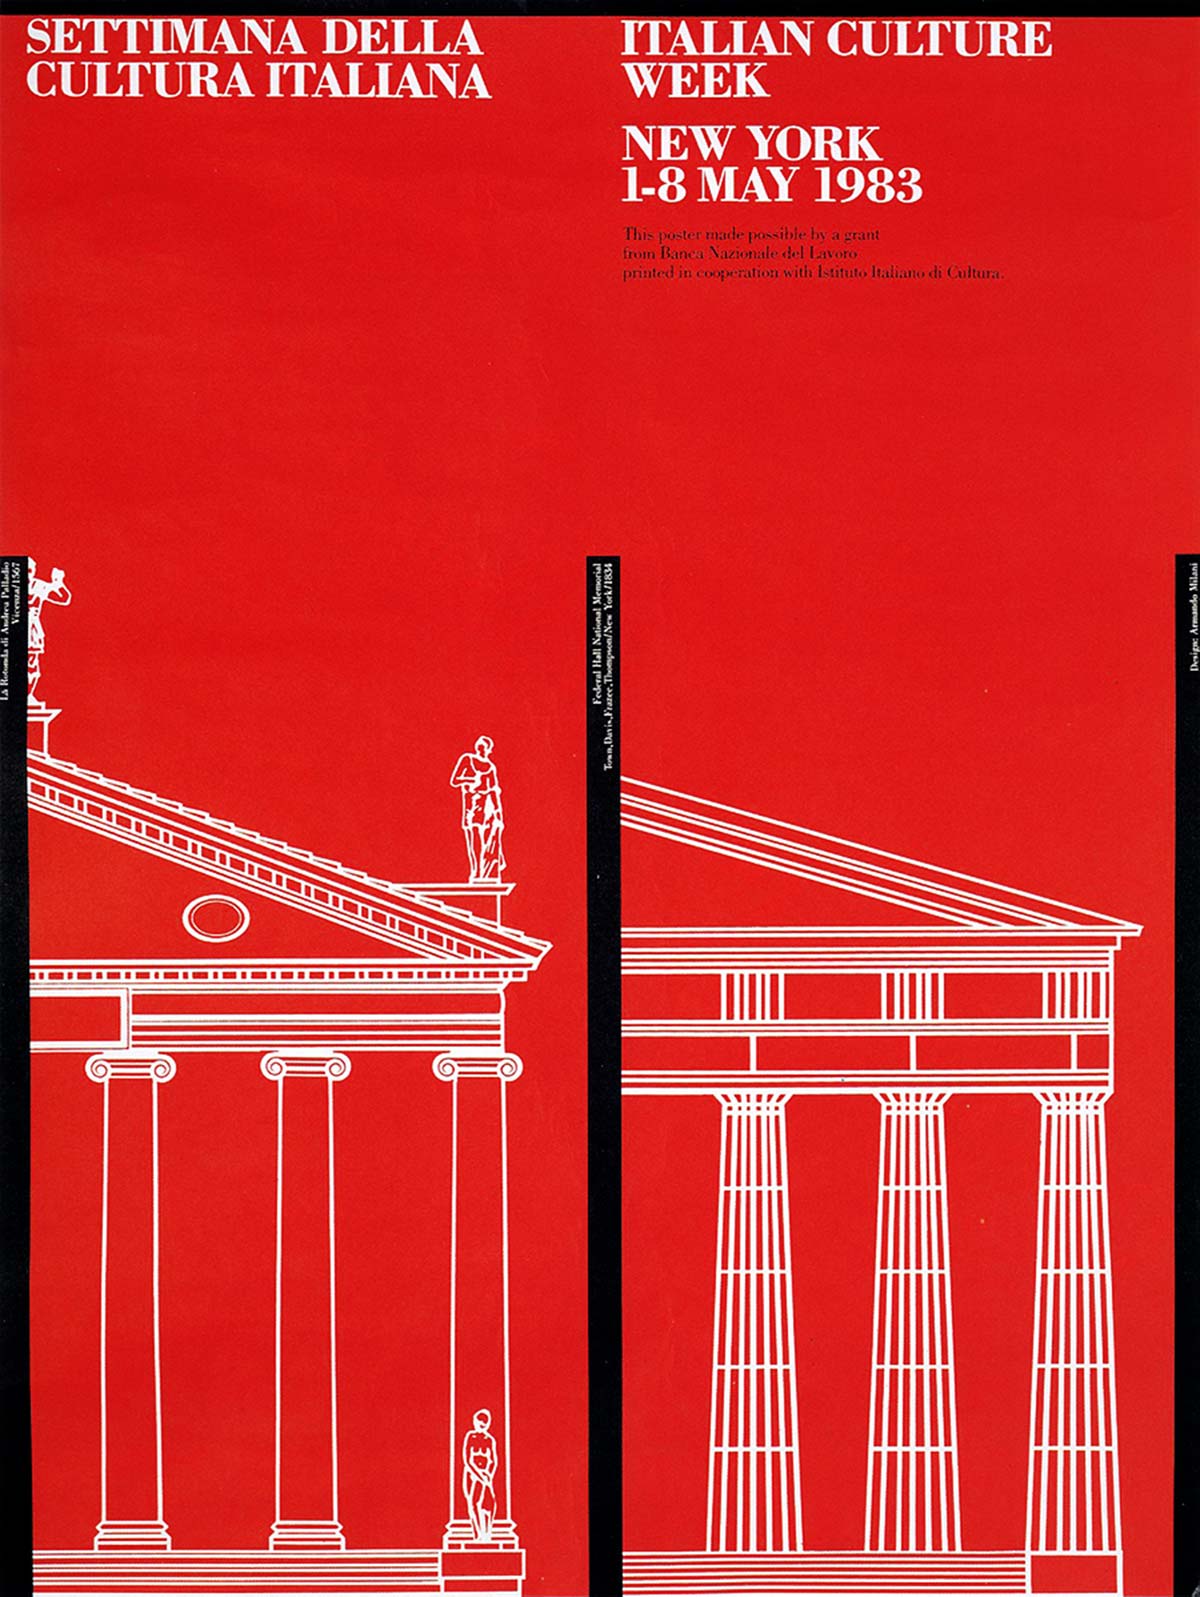 Плакат Недели итальянской культуры Армандо Милани, 1983 год.